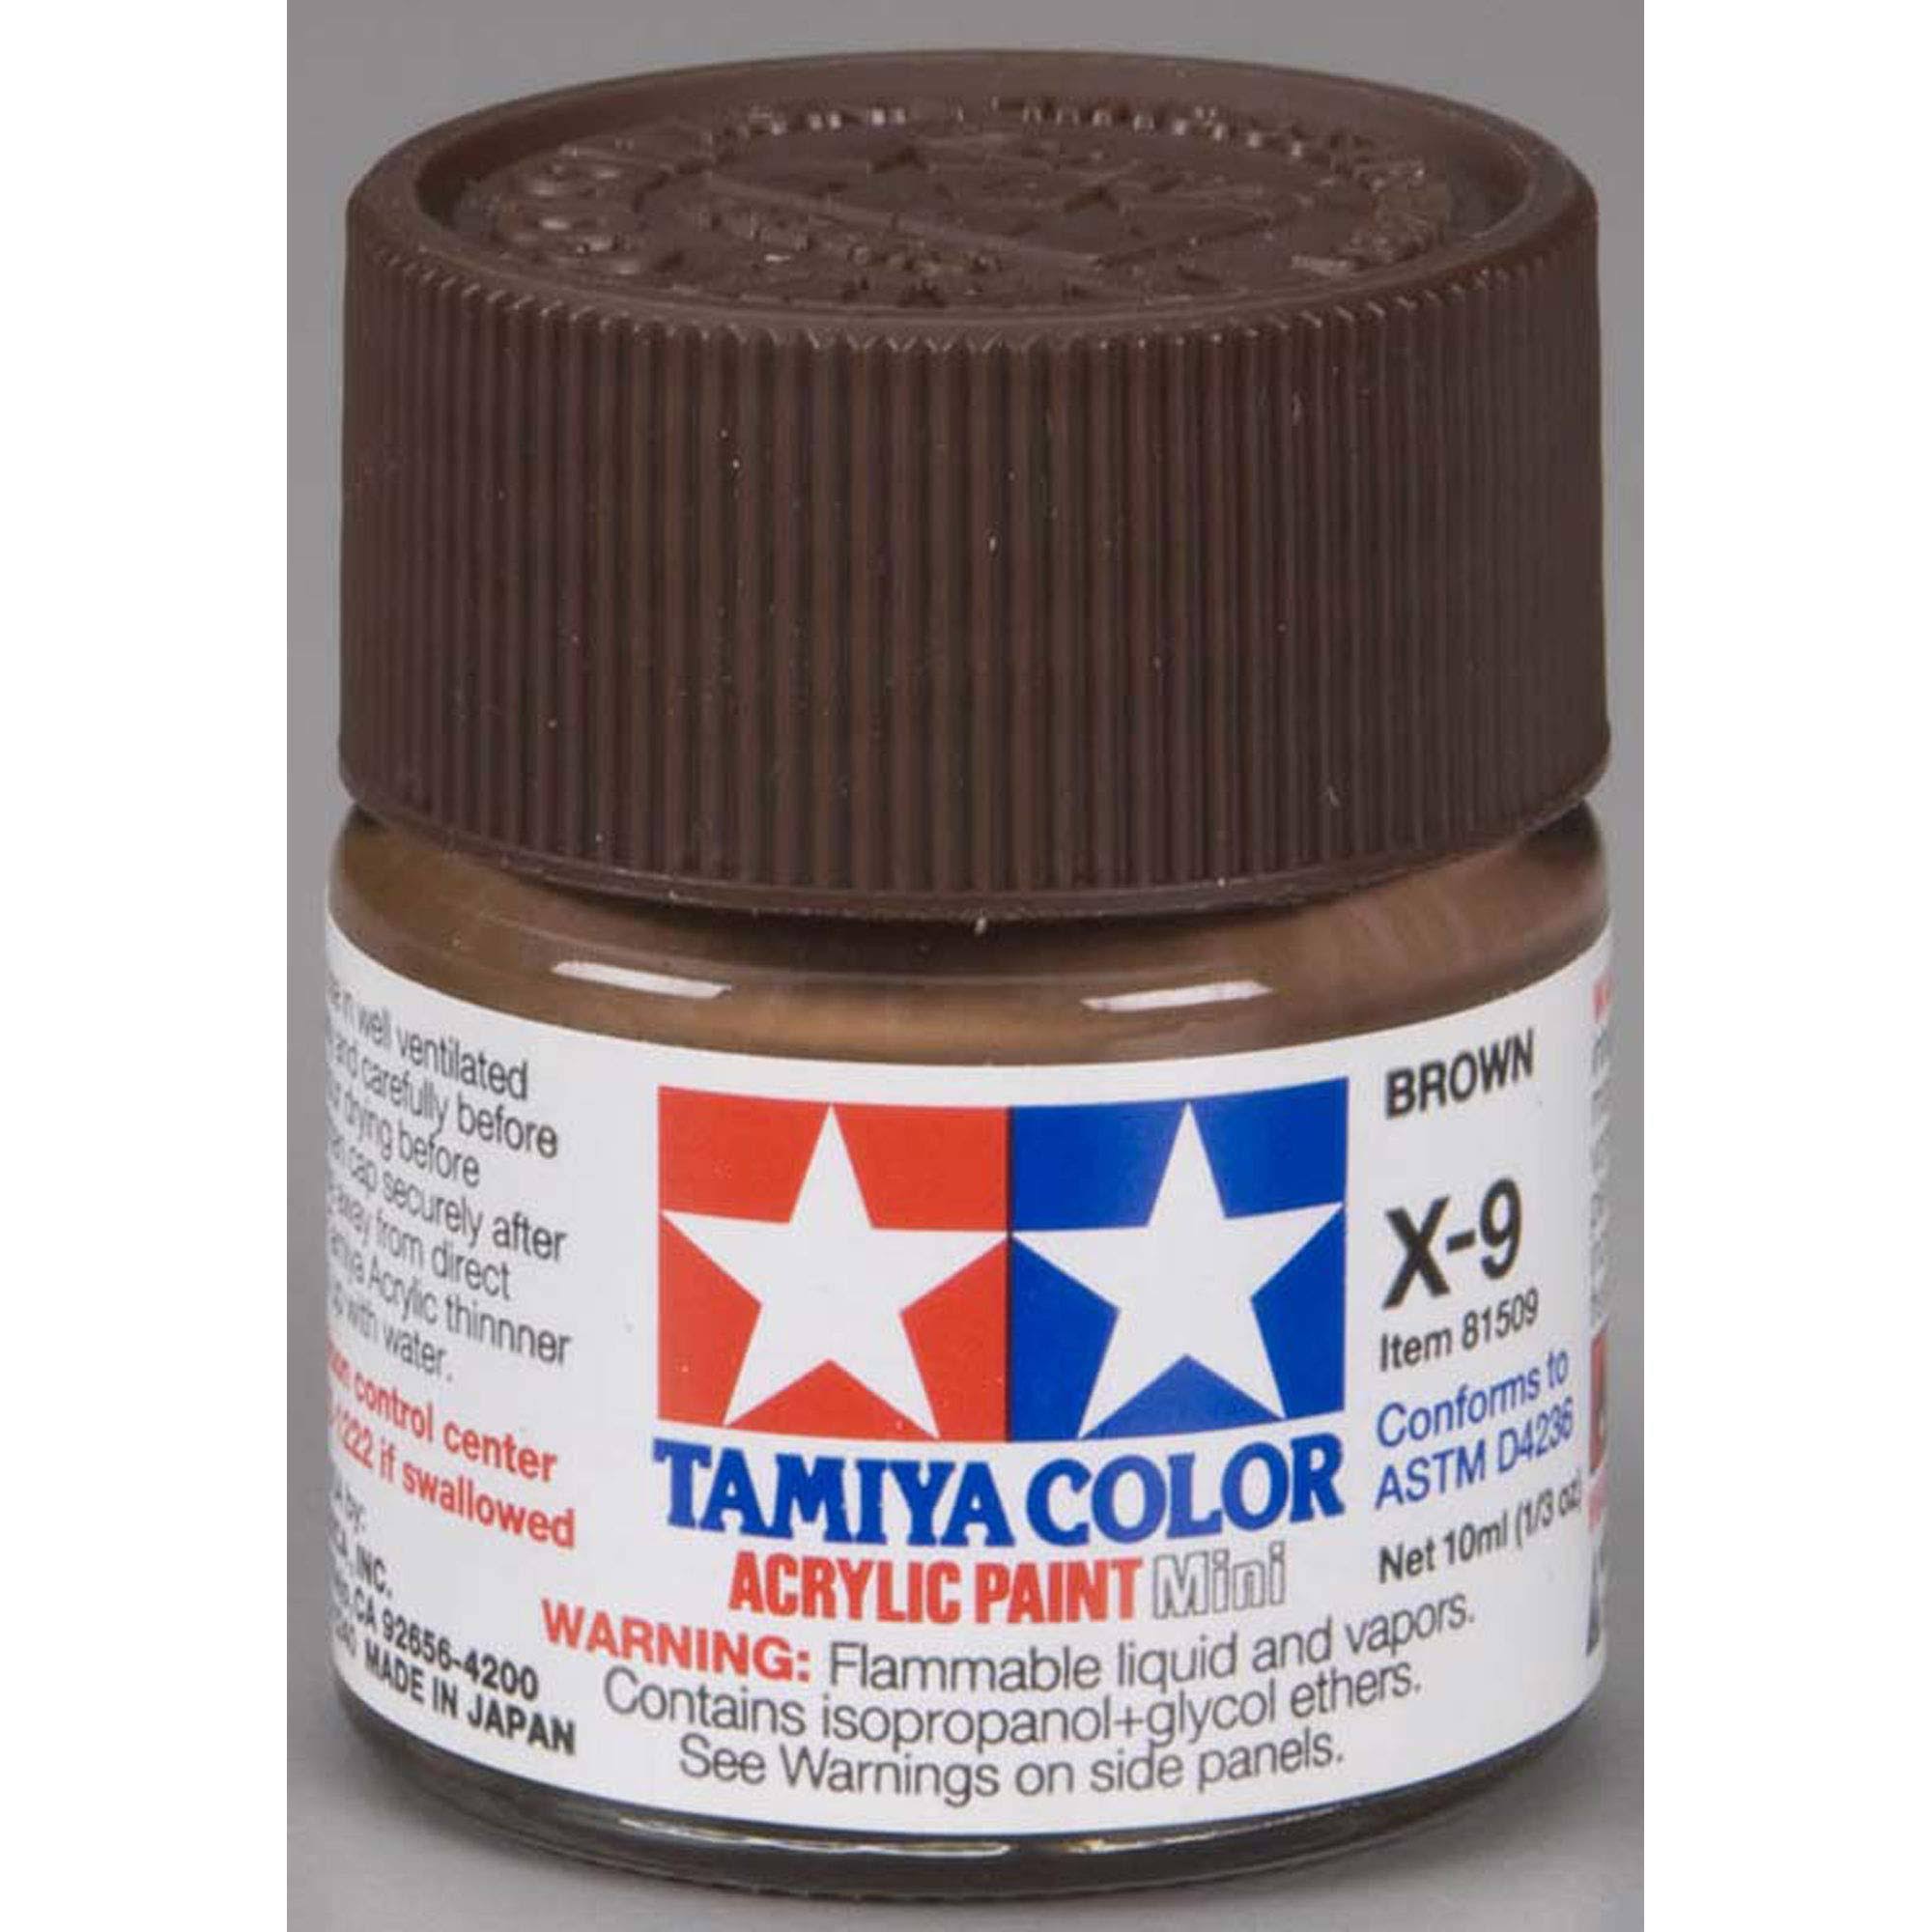 Tamiya Acrylic Mini X-9 Brown 1/3 oz 81509